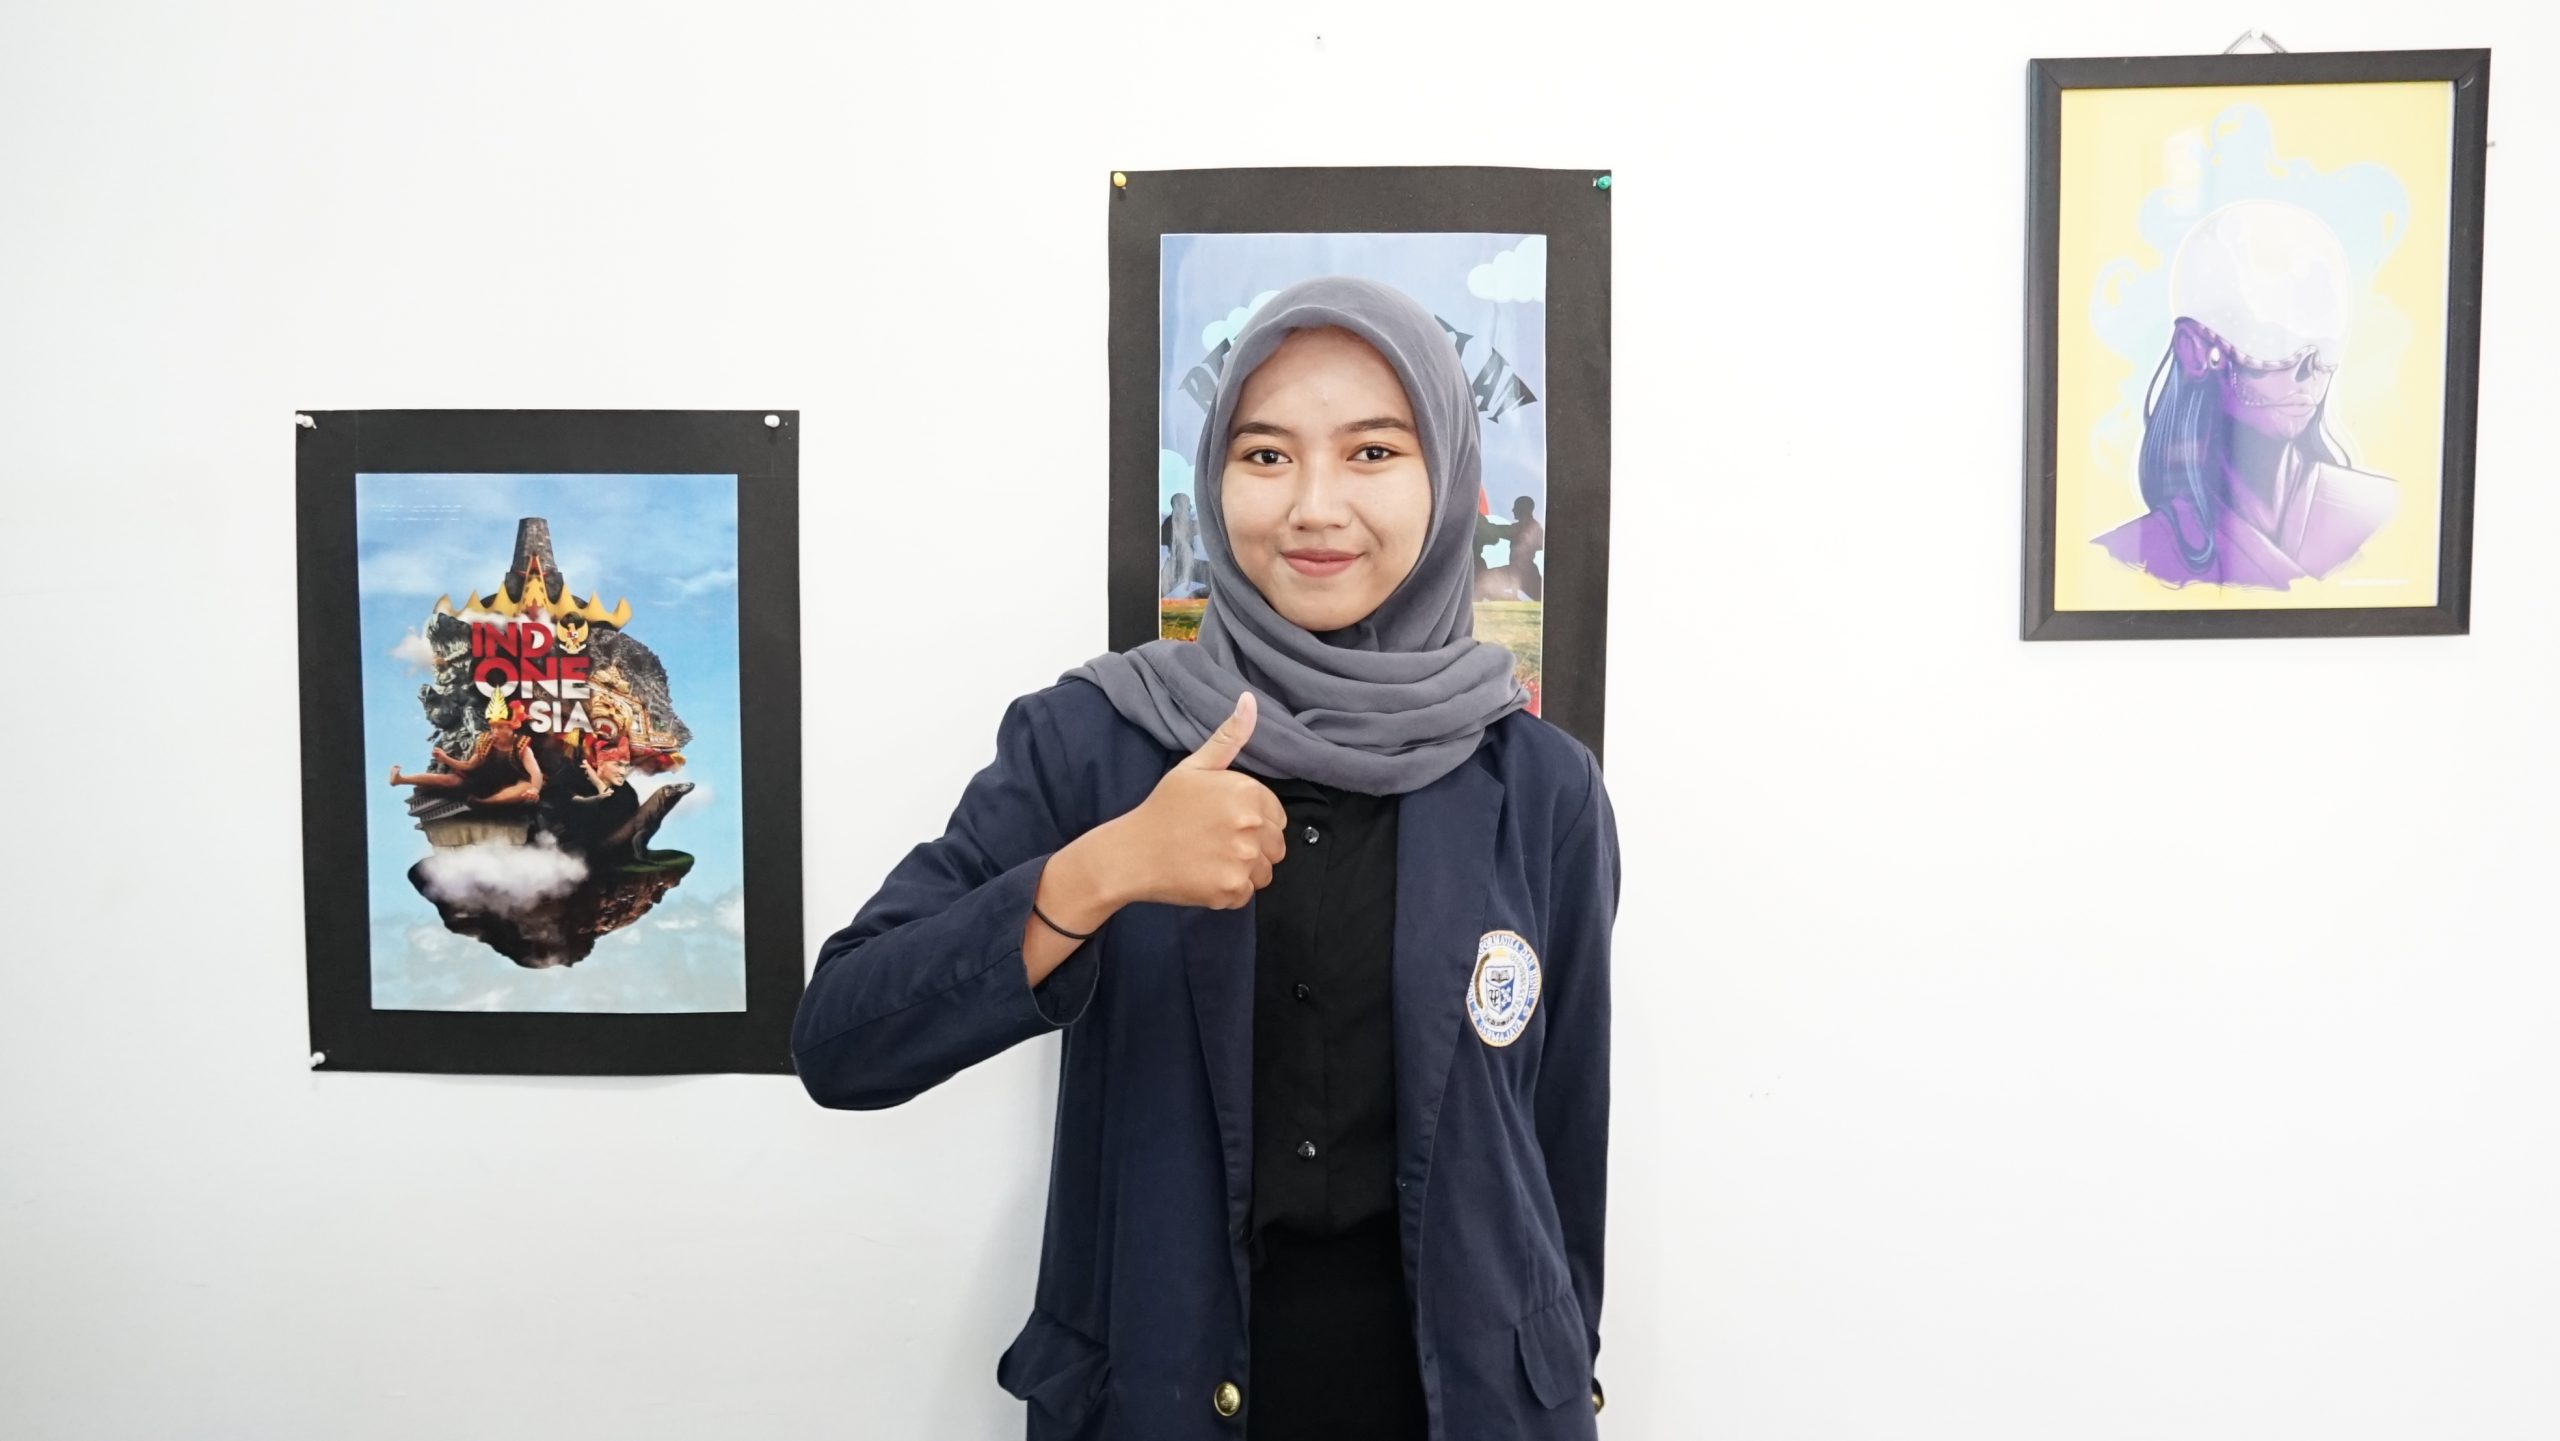 Double Winner, Mahasiswi Prodi DKV Darmajaya Juara Lomba Fotografi dan Lomba Gambar Digital Tingkat Nasional